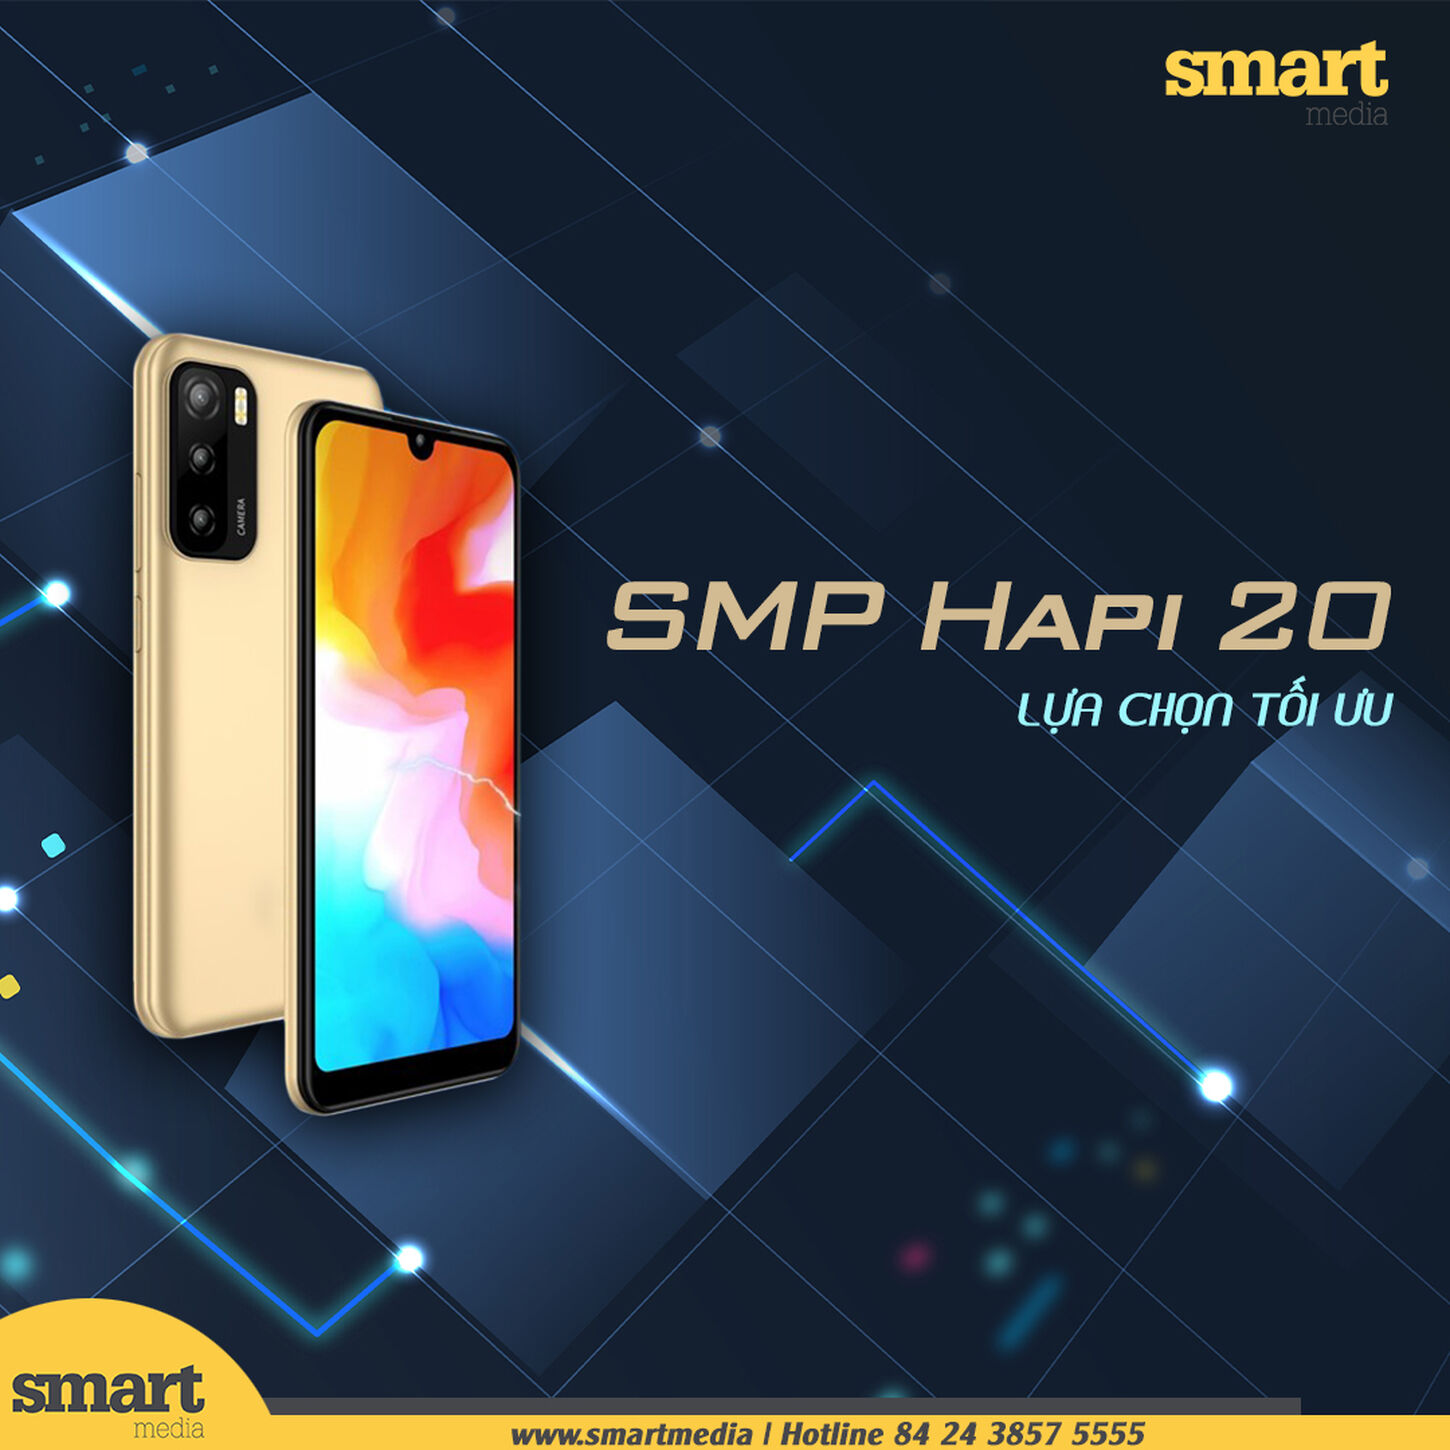 Smartphone SMP Hapi 20 – Smartphone “đỉnh” trong phân khúc giá rẻ